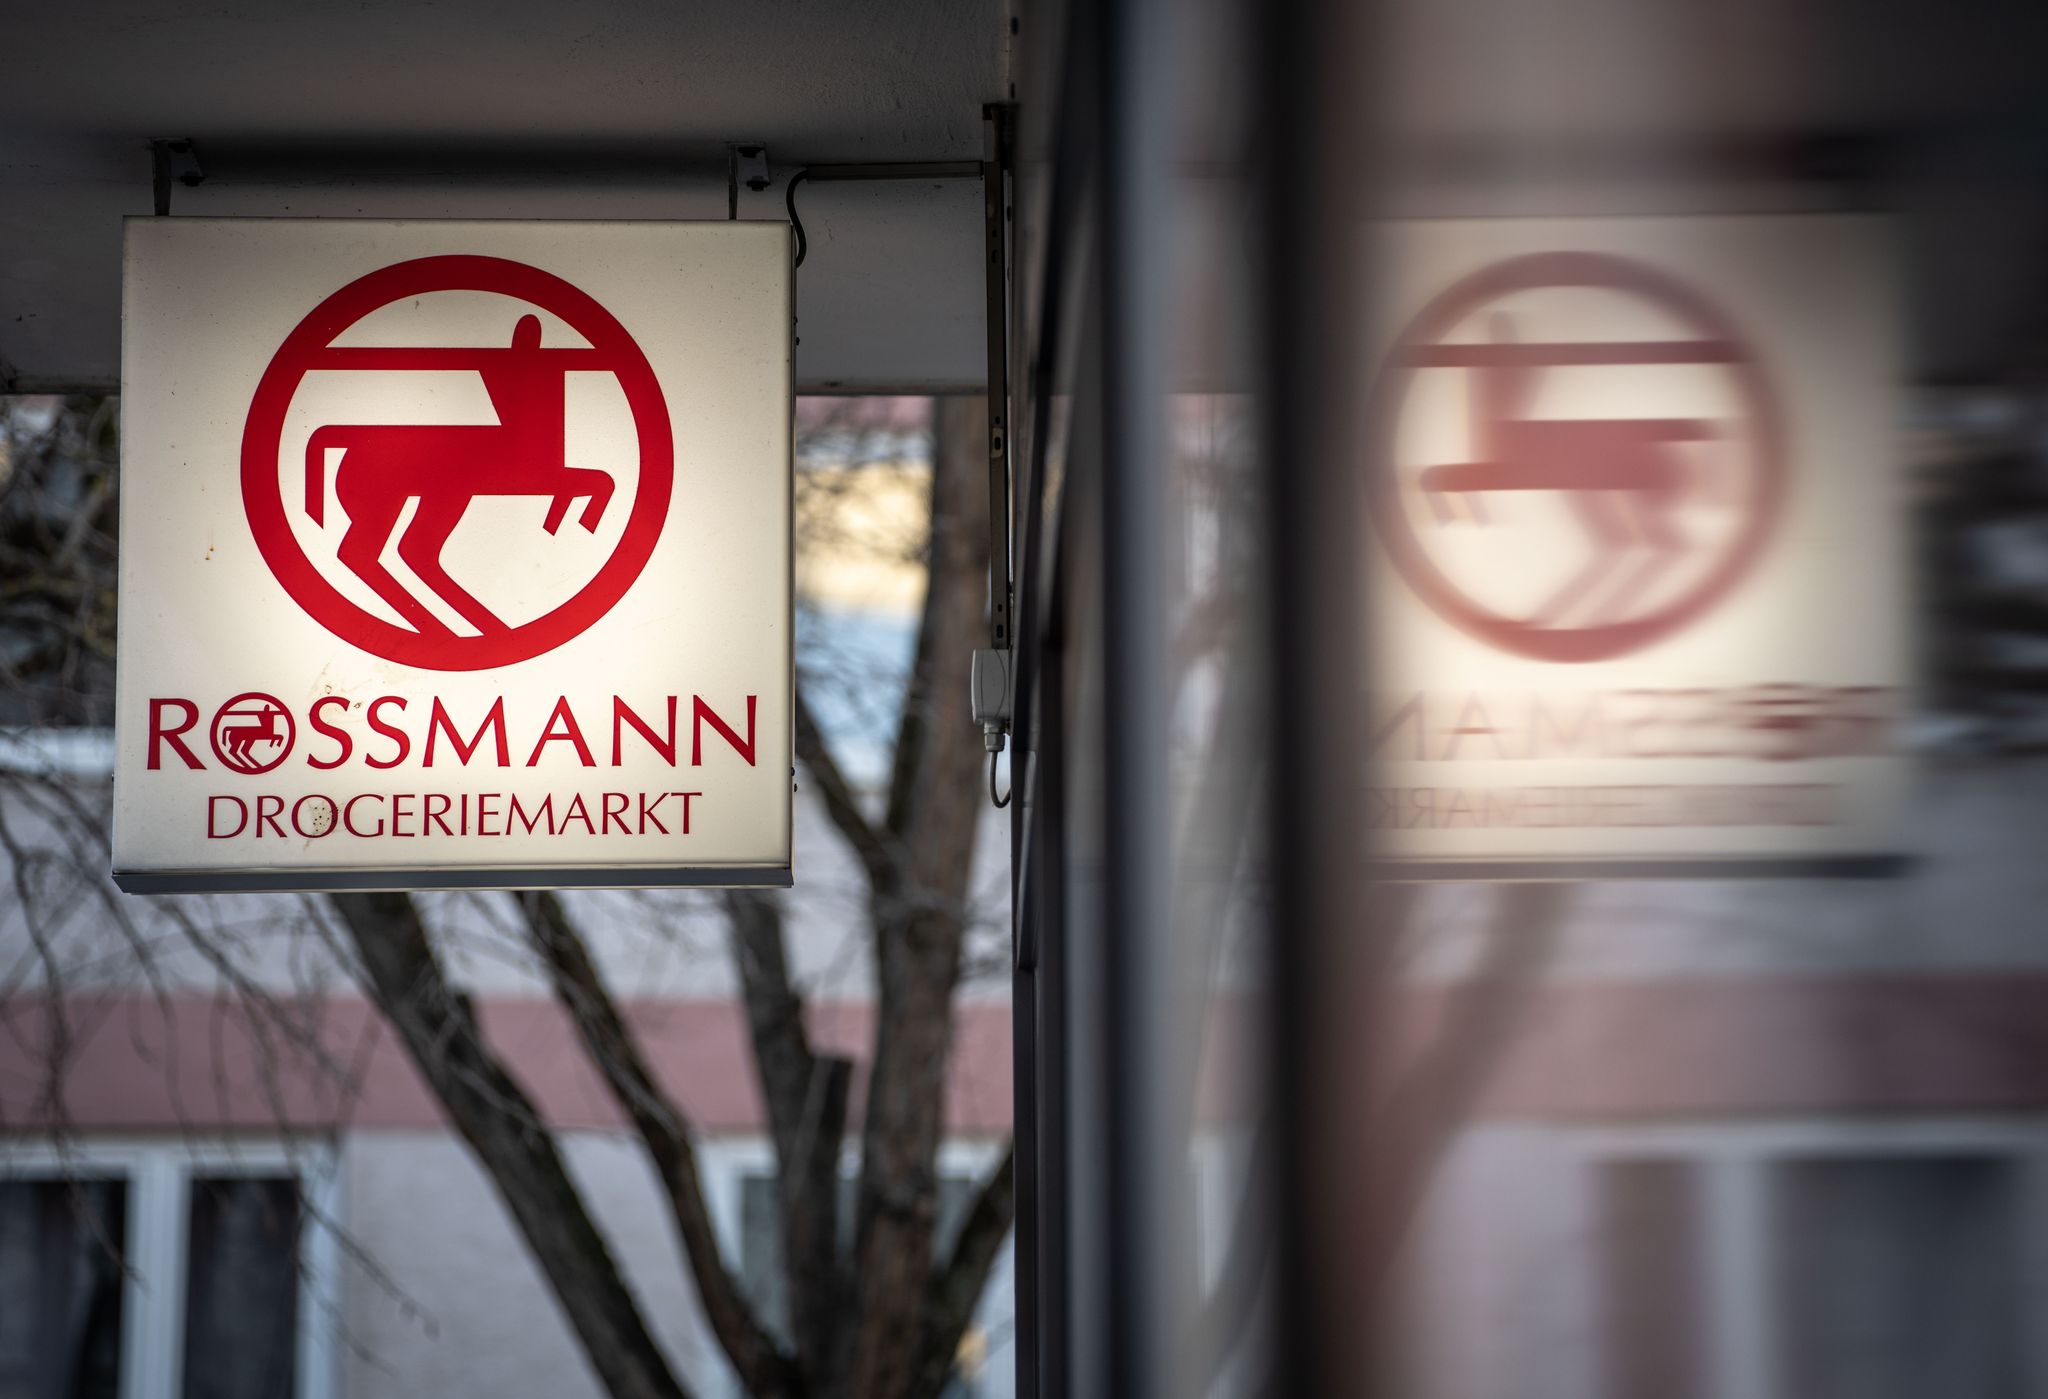 Die Drogeriemarktkette Rossmann hat im vergangenen Jahr deutlich zugelegt und einen Rekordumsatz verbucht.